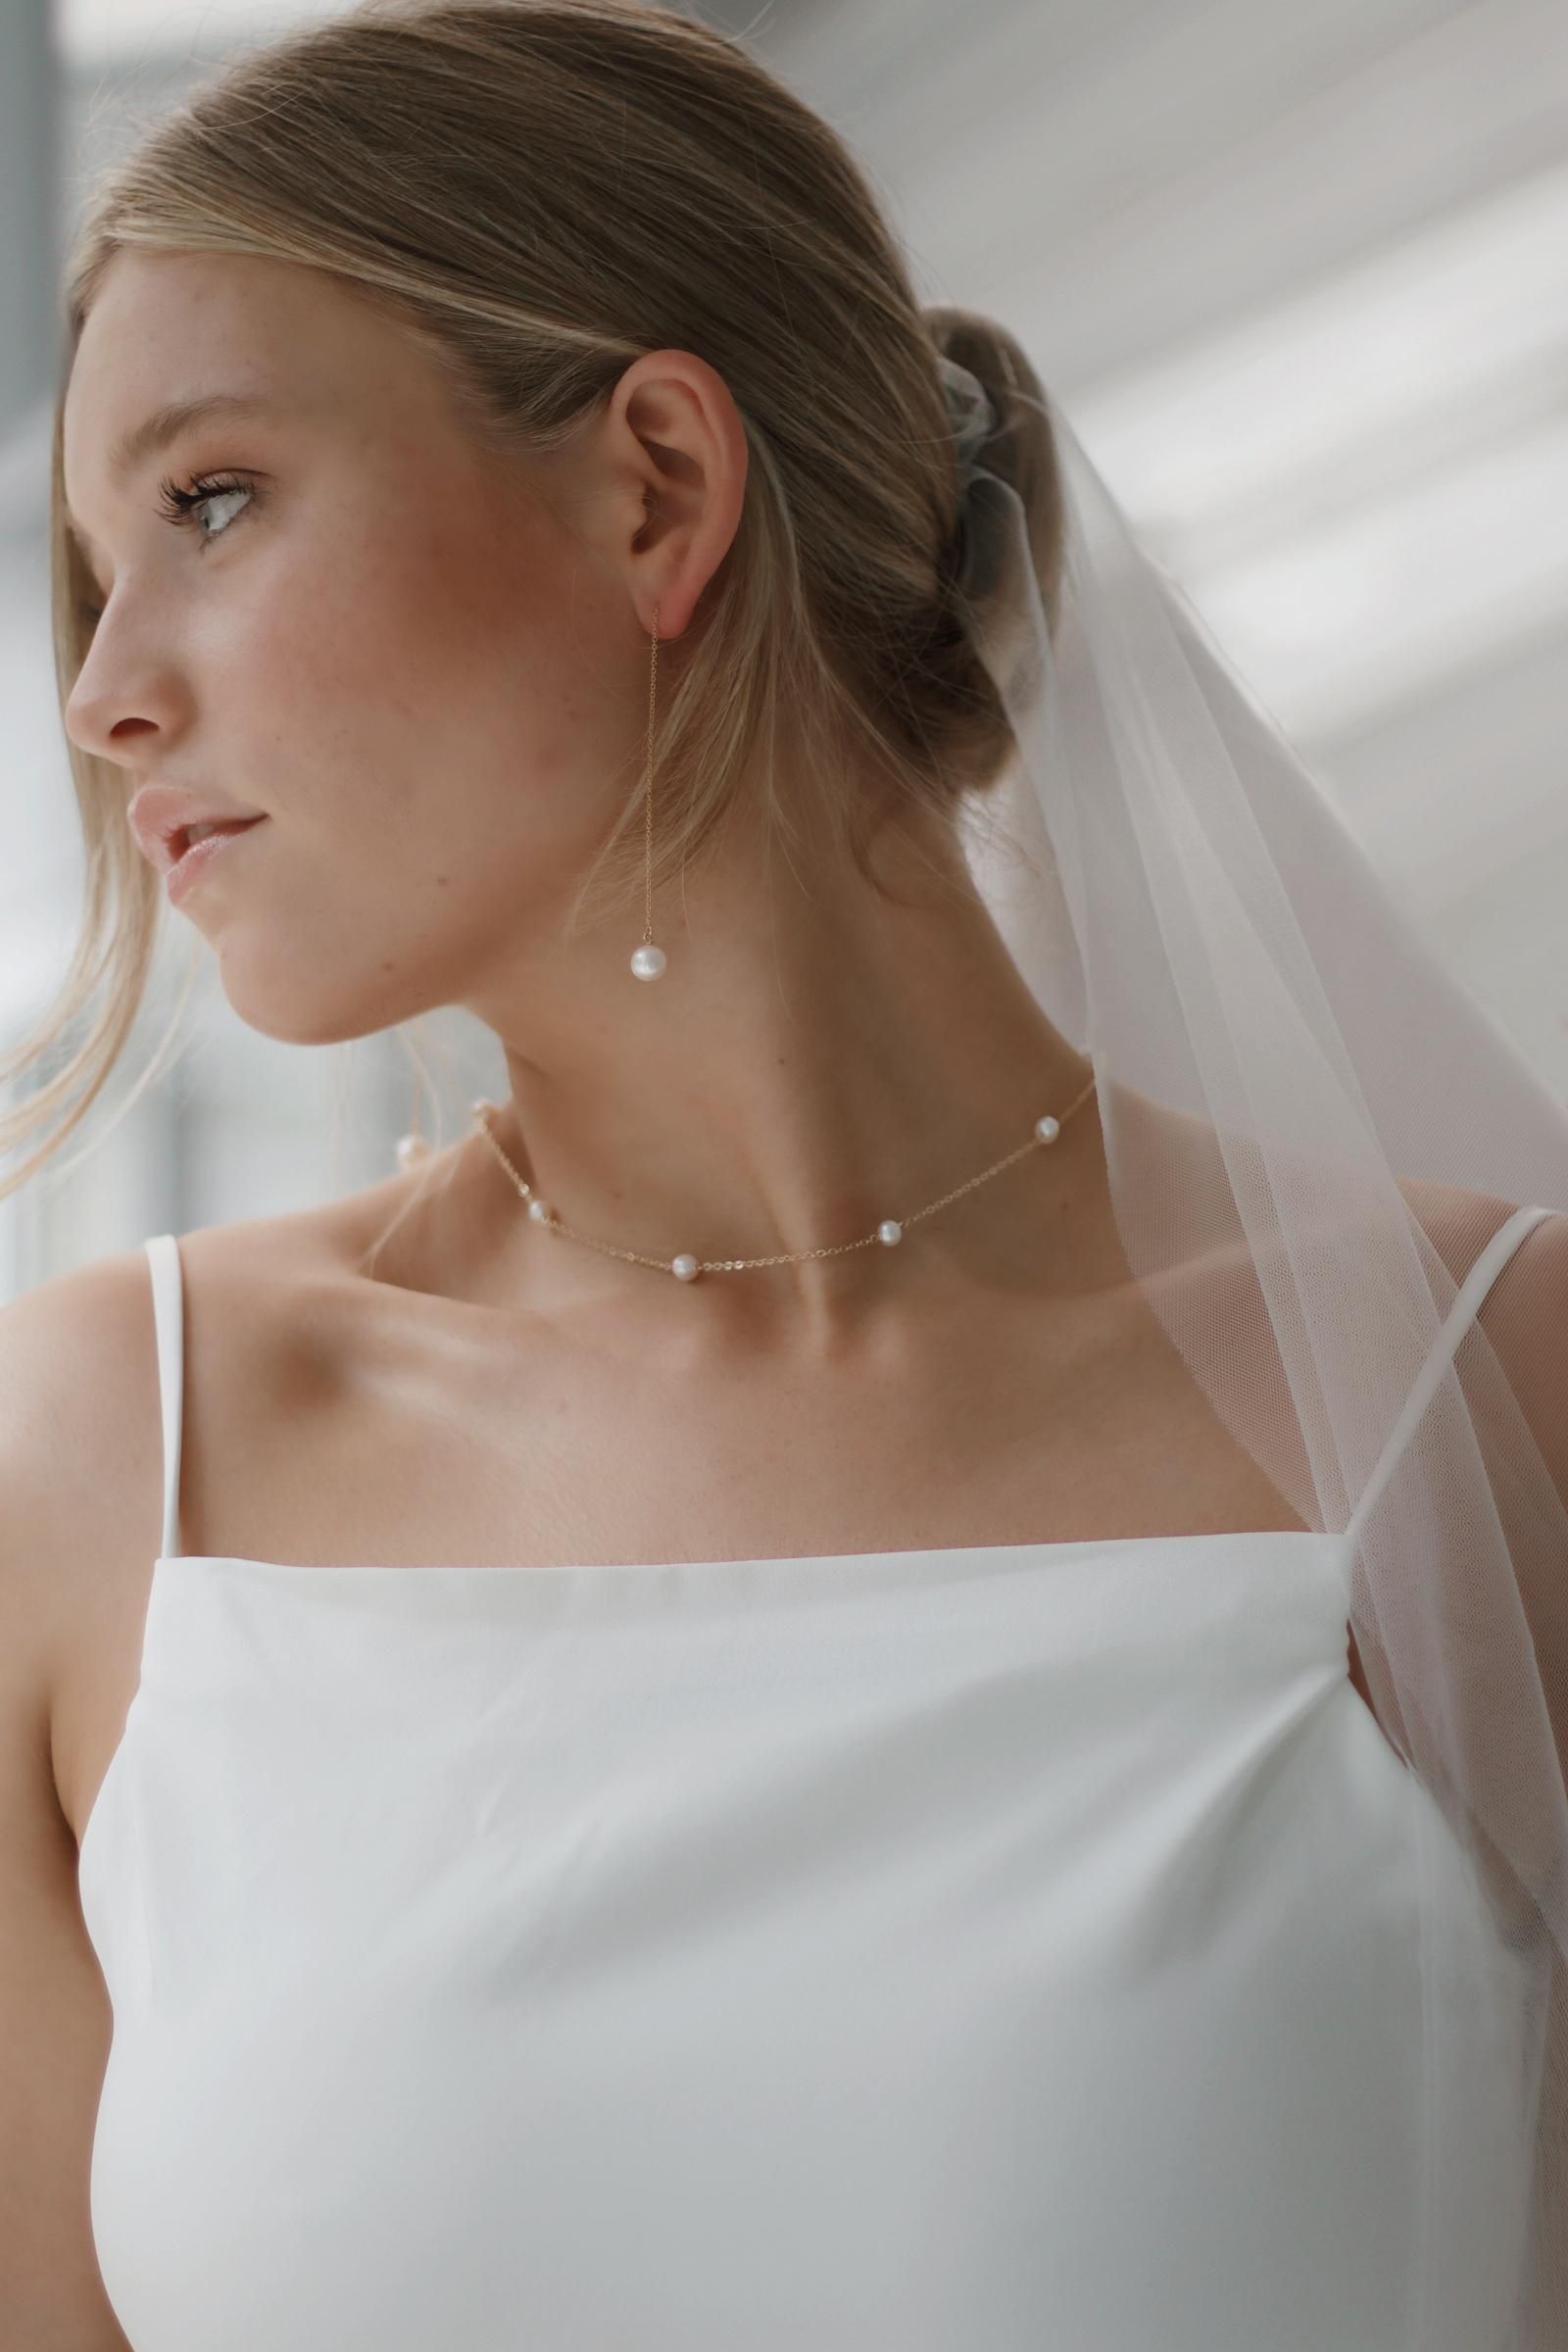 bride wearing lots of pearls 2022 Wedding Trends